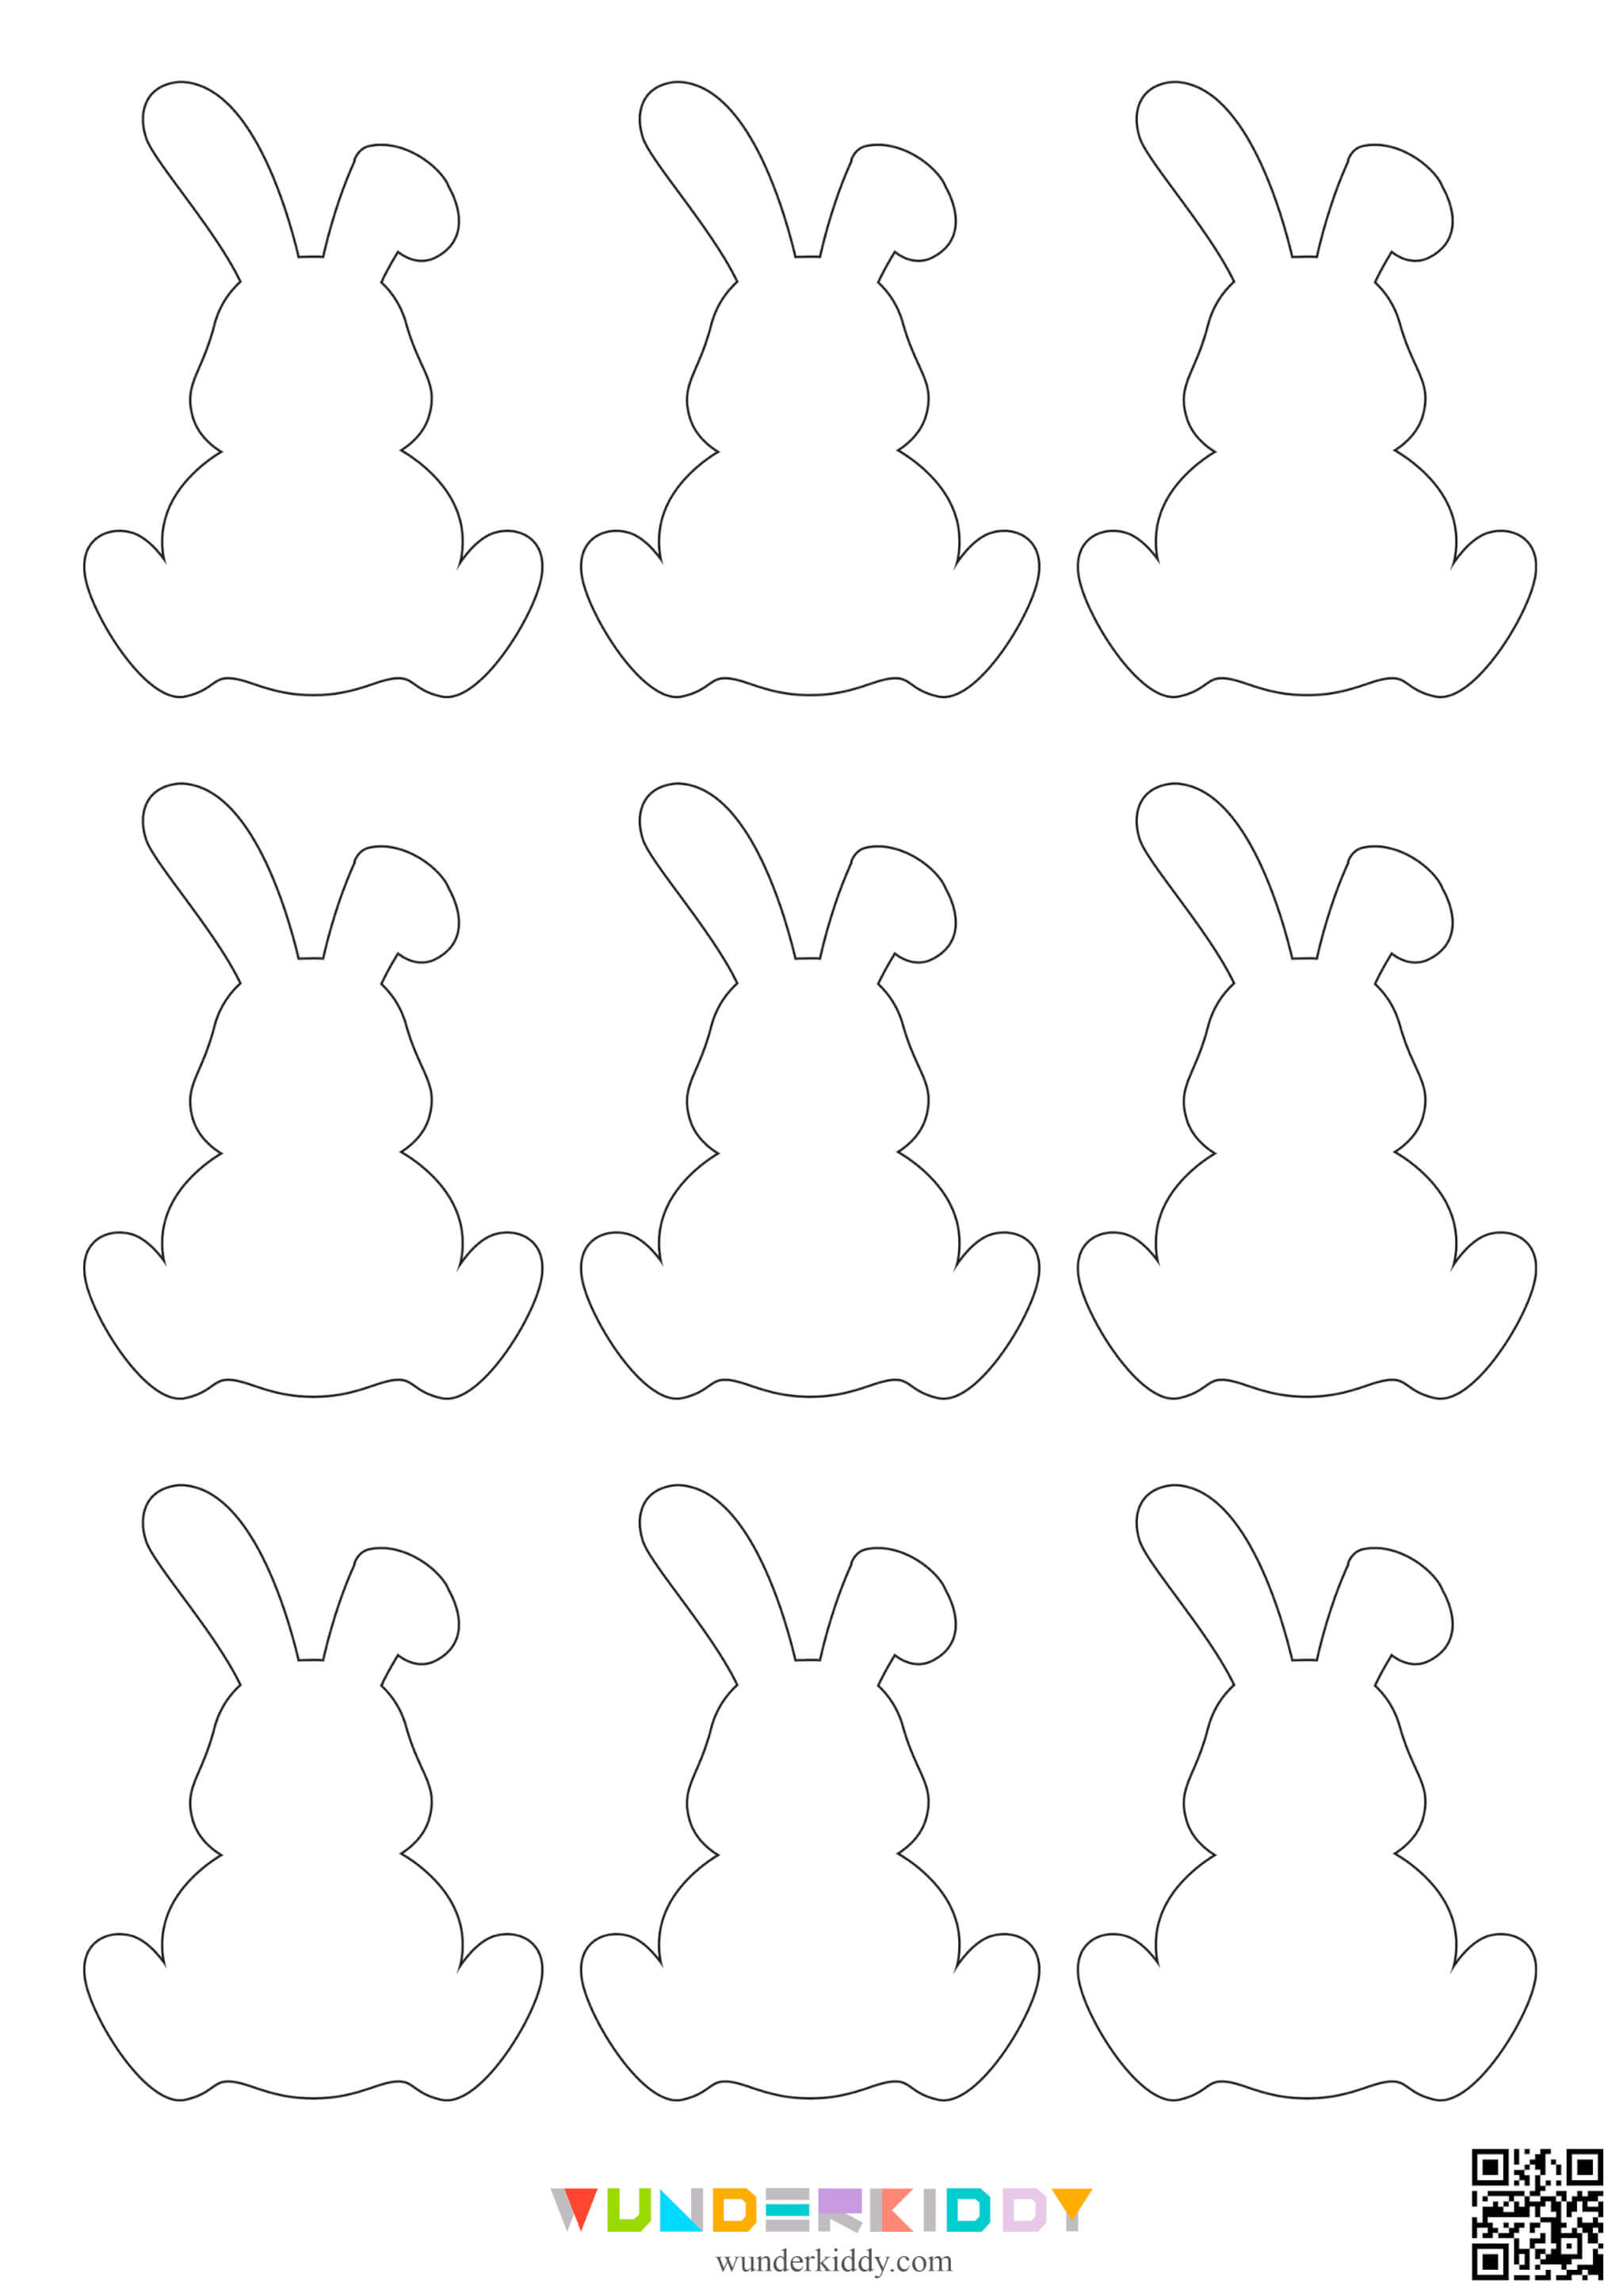 Printable Easter Bunny Template - Image 5